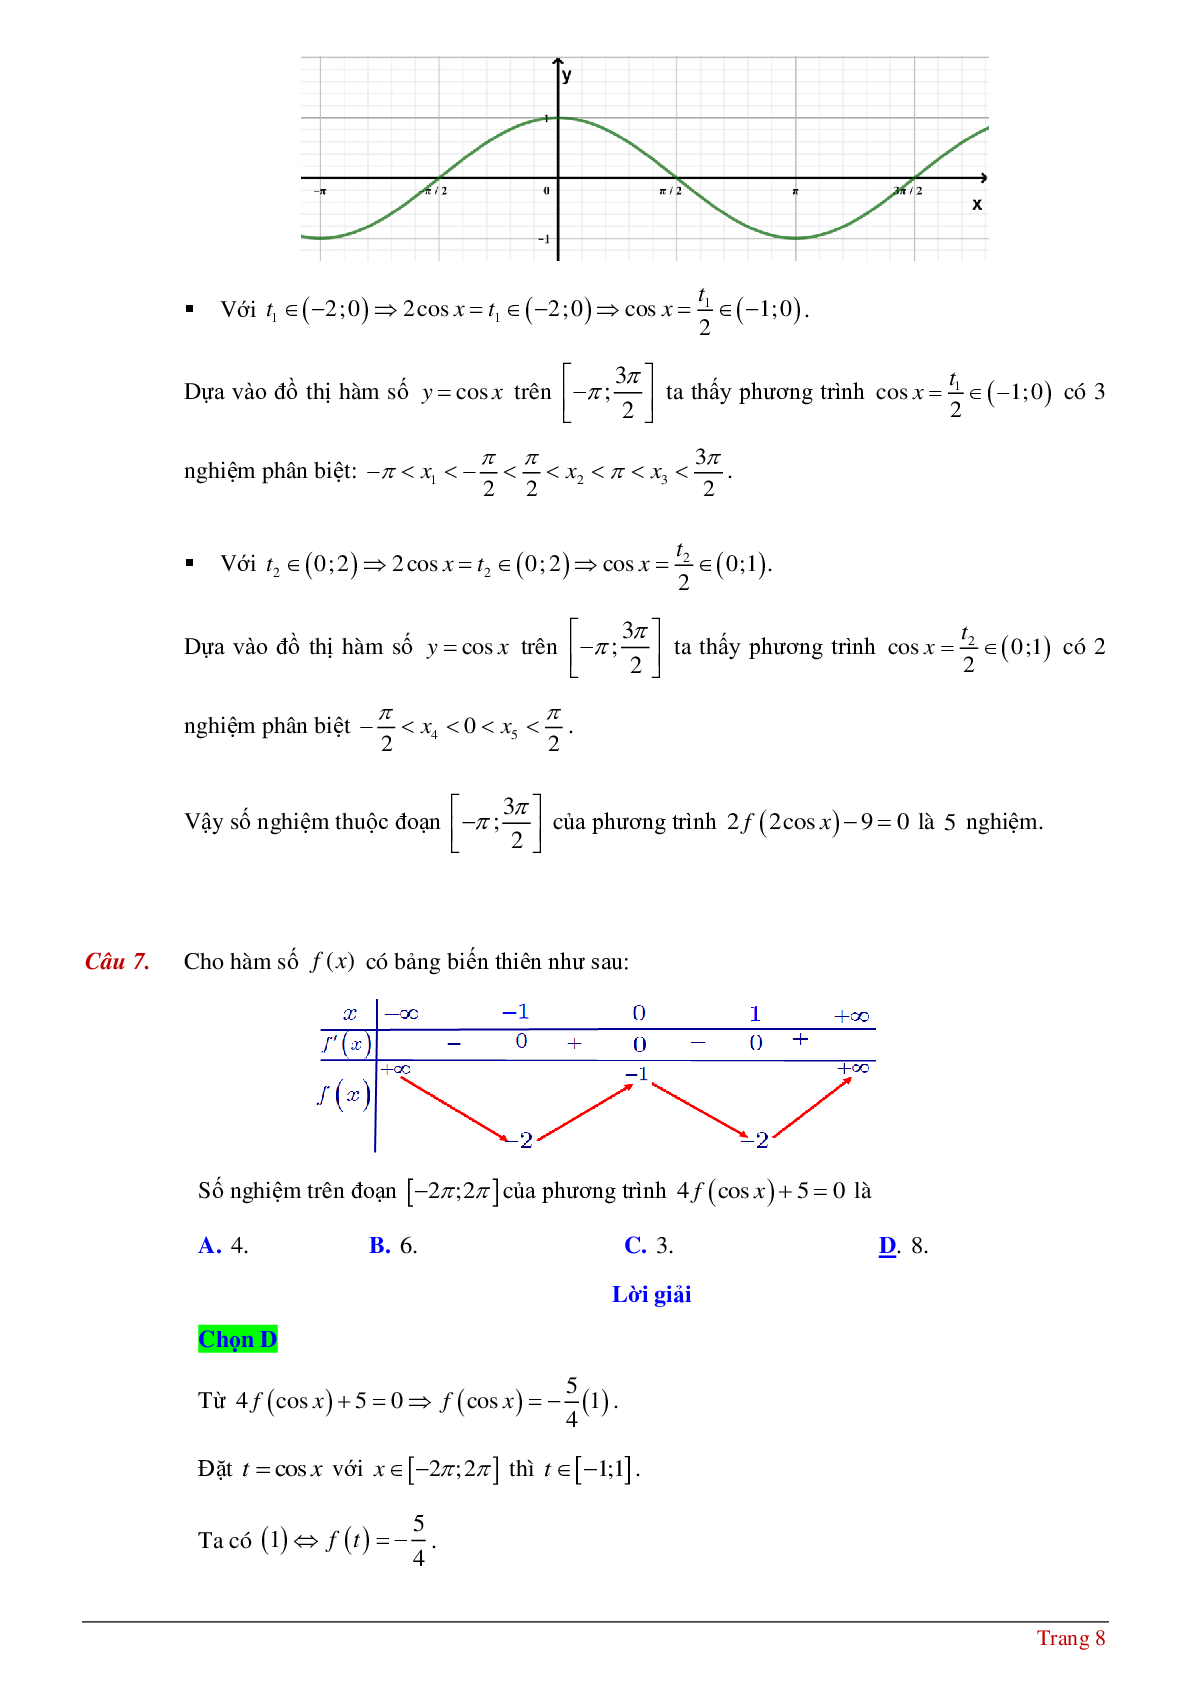 Tìm số nghiệm của phương tình hàm hợp khi biết bảng biến thiên hoặc đồ thị (trang 8)